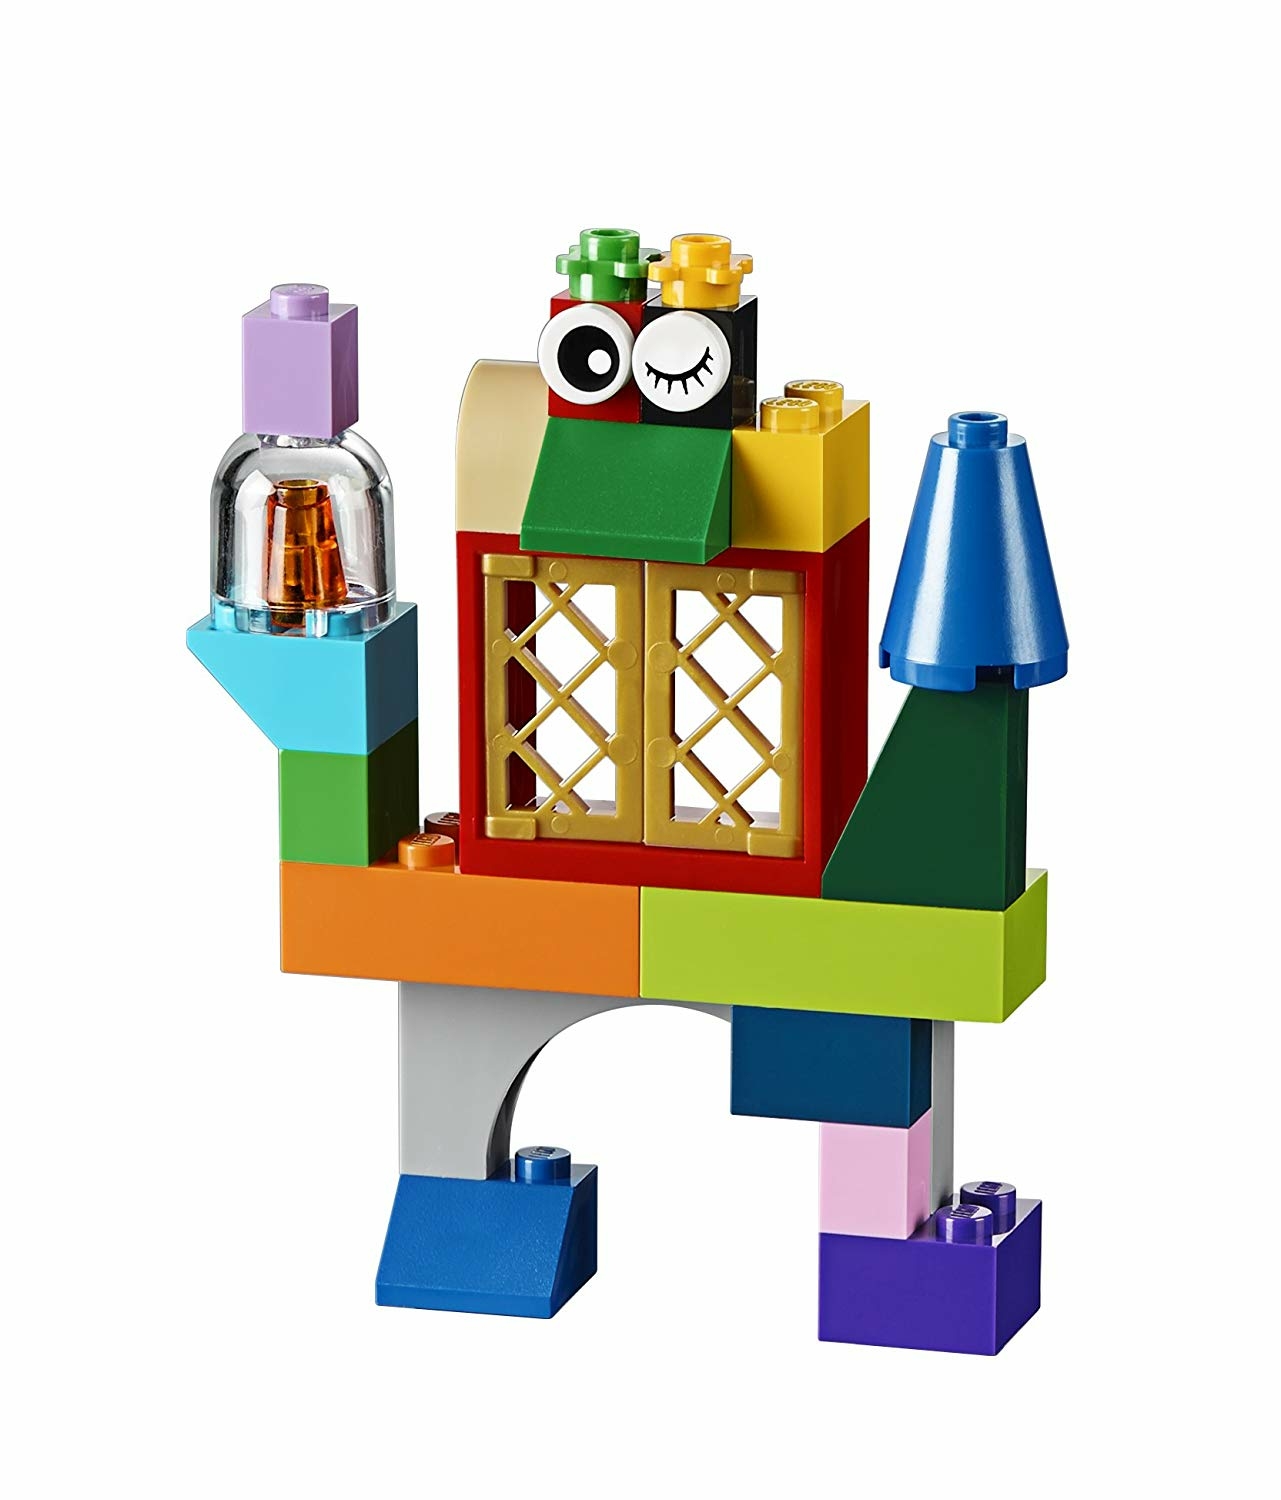 LEGO Classic Boîte de briques créatives deluxe 10698 LEGO